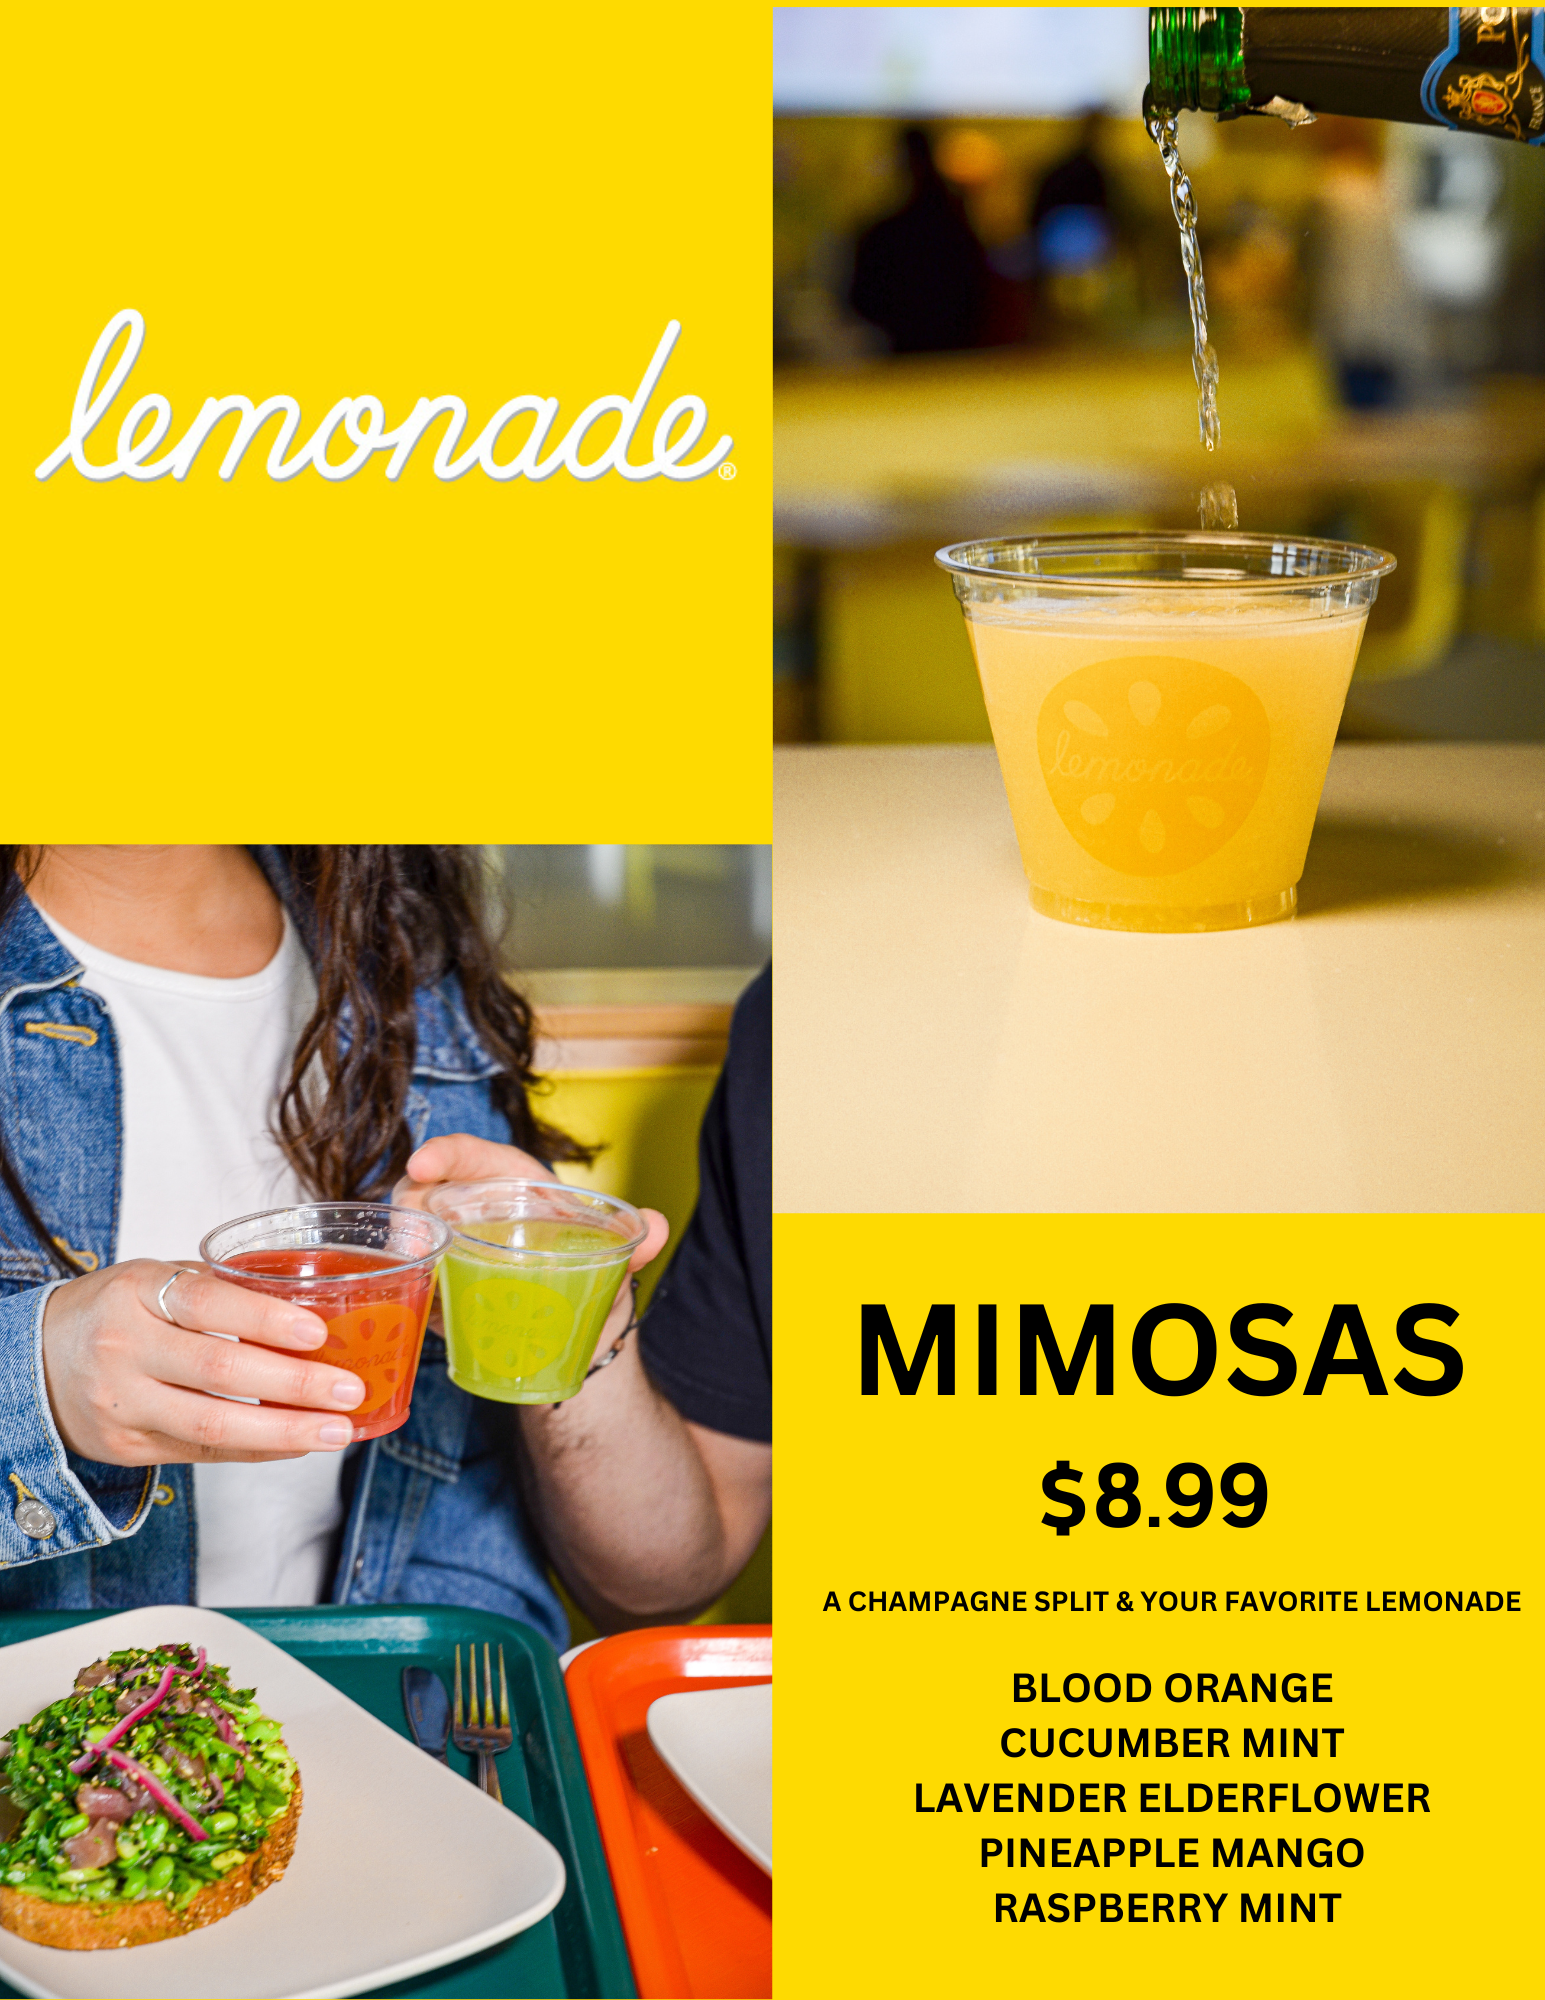 Mimosas at Lemonade on South Lake Avenue in Pasadena